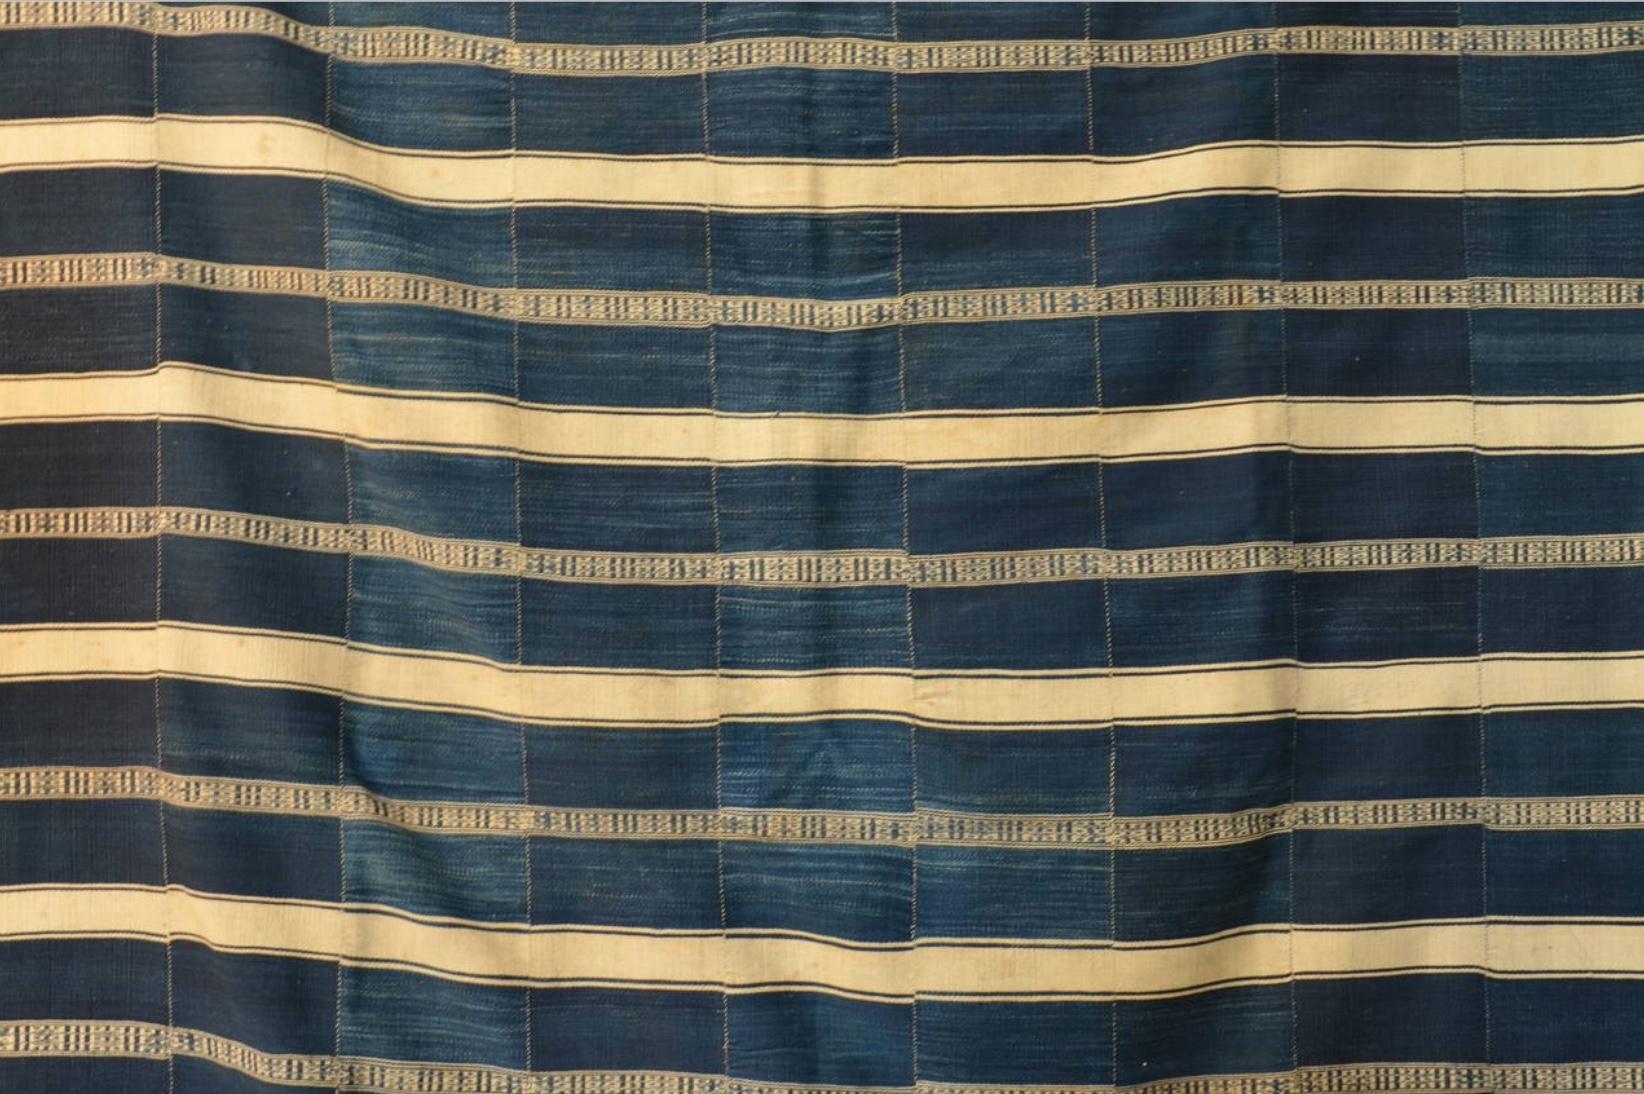 Westafrikanische Indigo-Textilien in Museumsqualität. Aus Dahomey (Benin), ca. 1925. 

Das gleiche Stück befindet sich in der ständigen Sammlung des Musée de l'Homme in Paris.

Das Interesse an hochwertigen afrikanischen Textilien ist in letzter